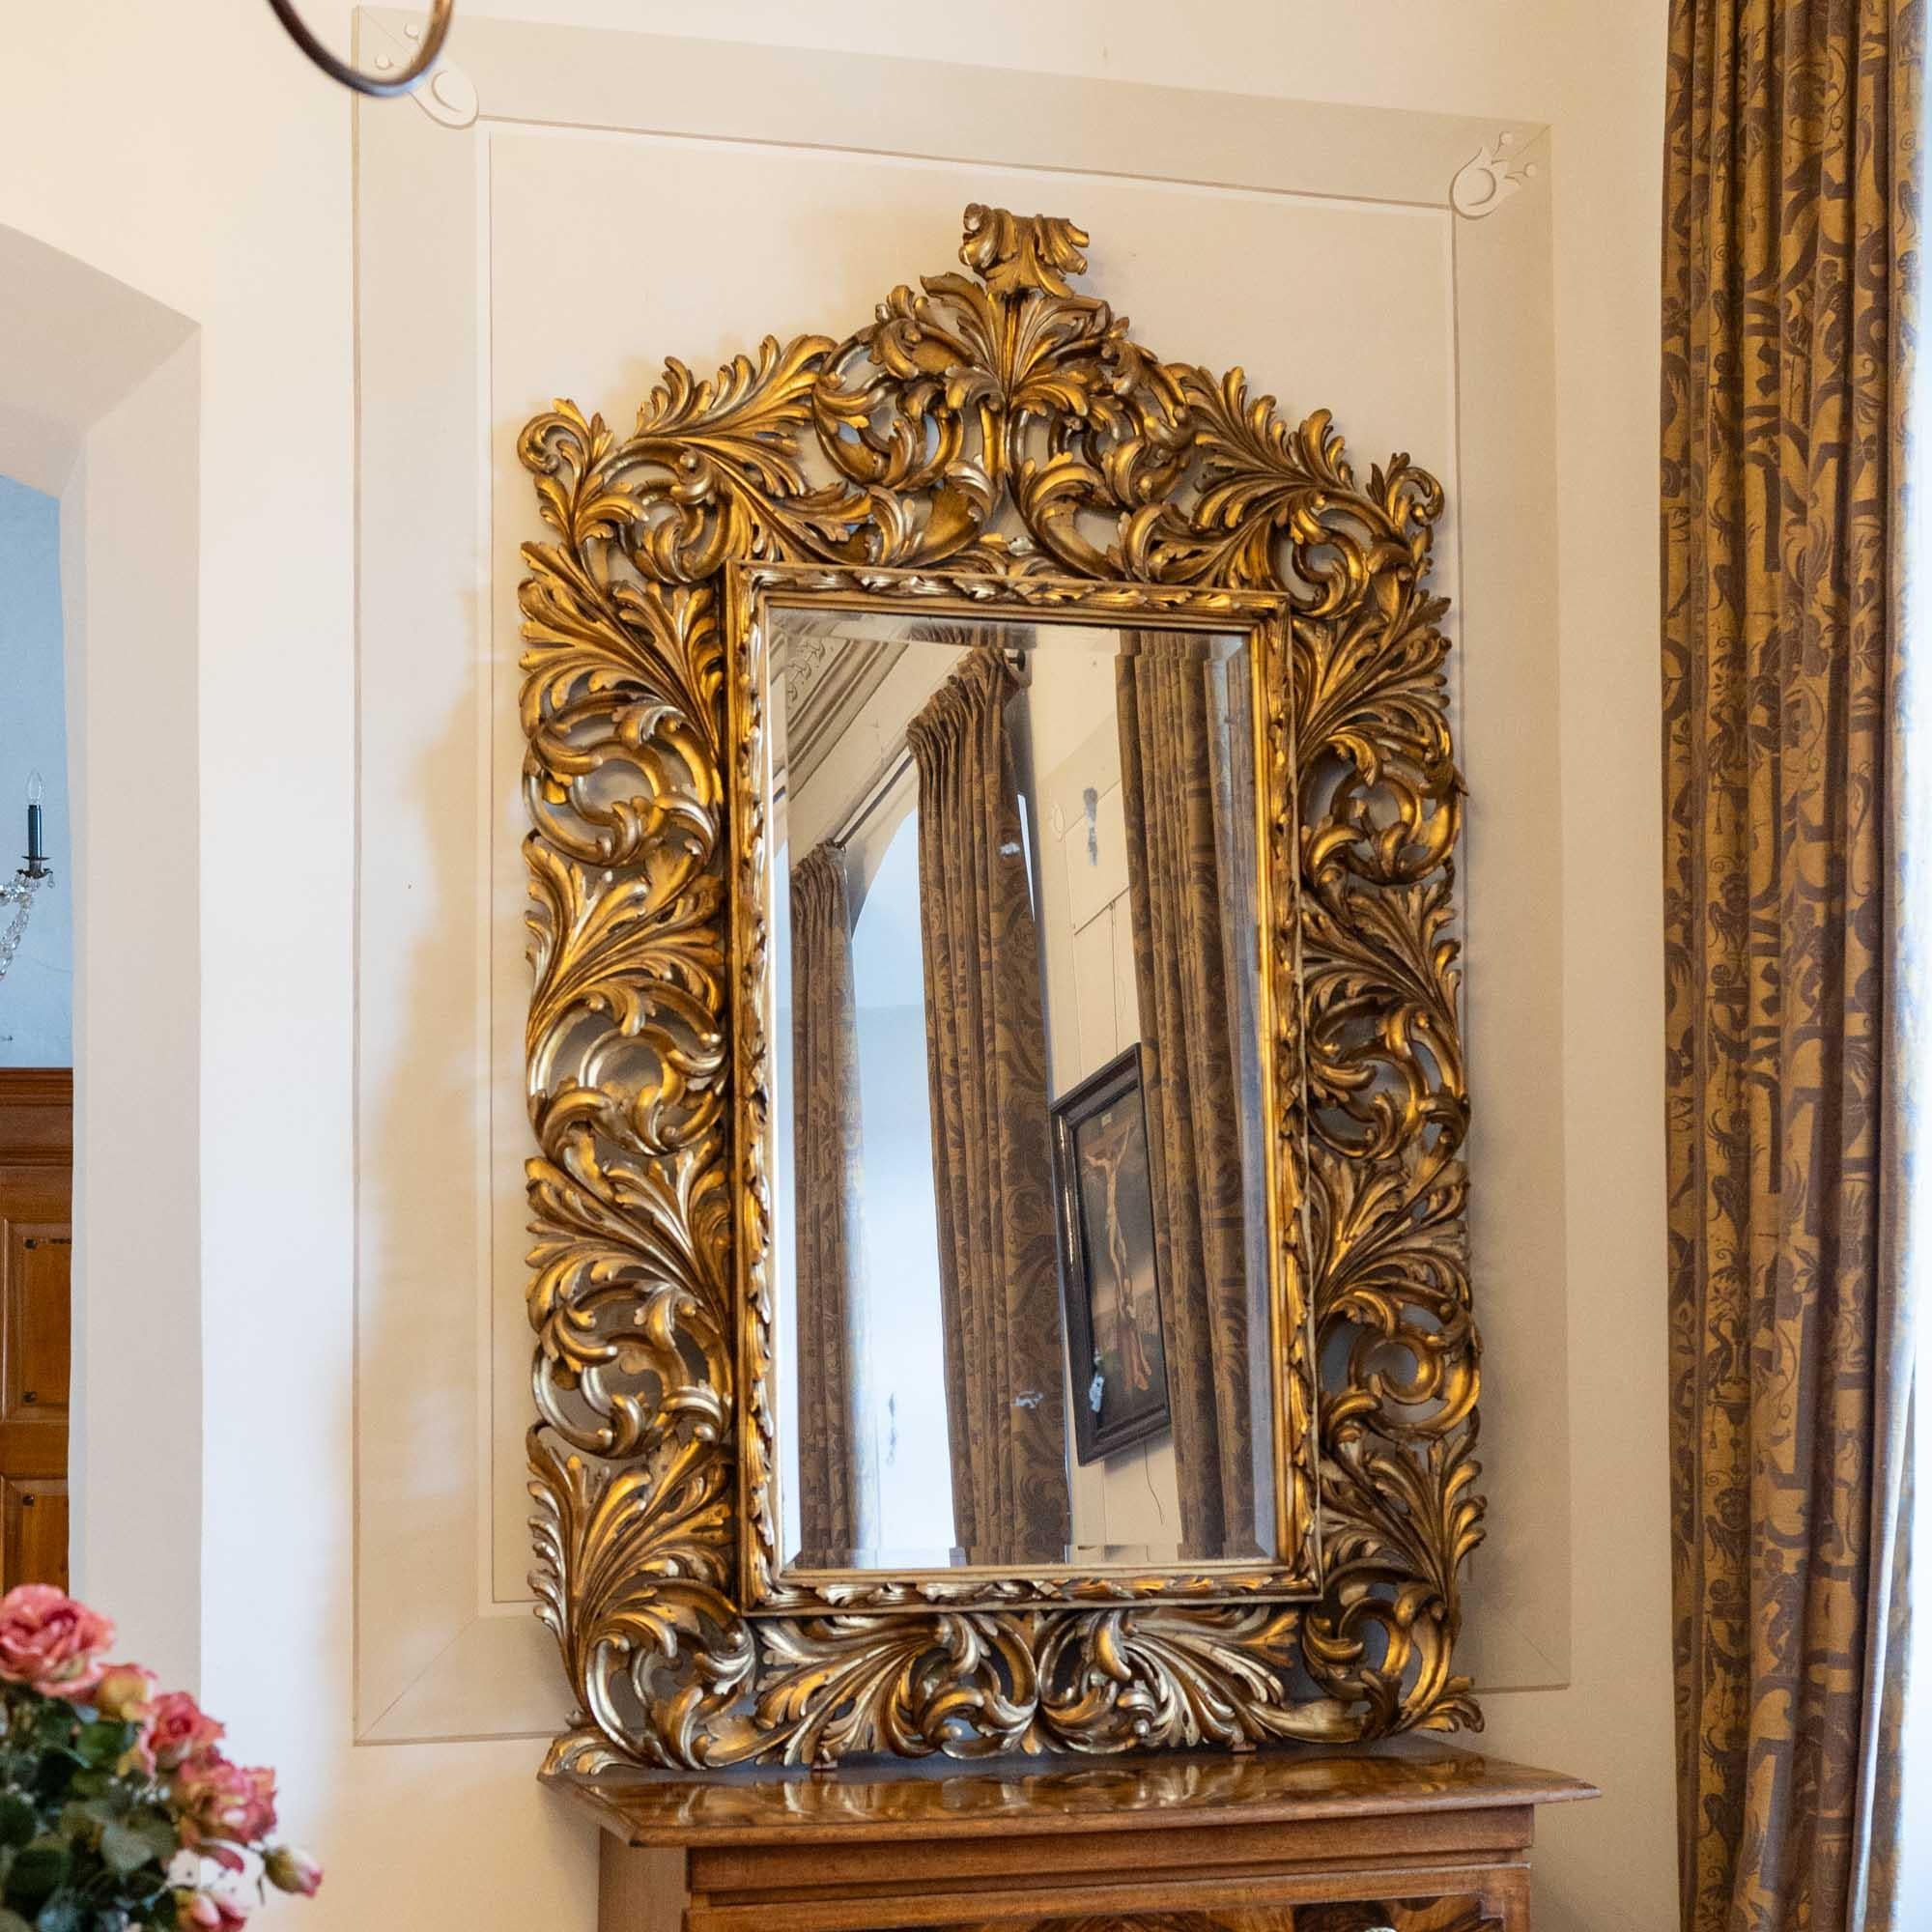 Grand miroir mural Florentine avec ancienne glace partiellement aveugle. Le miroir mural est entouré d'un grand cadre en bois doré en forme de vrilles ajourées ou d'ornements de feuilles.